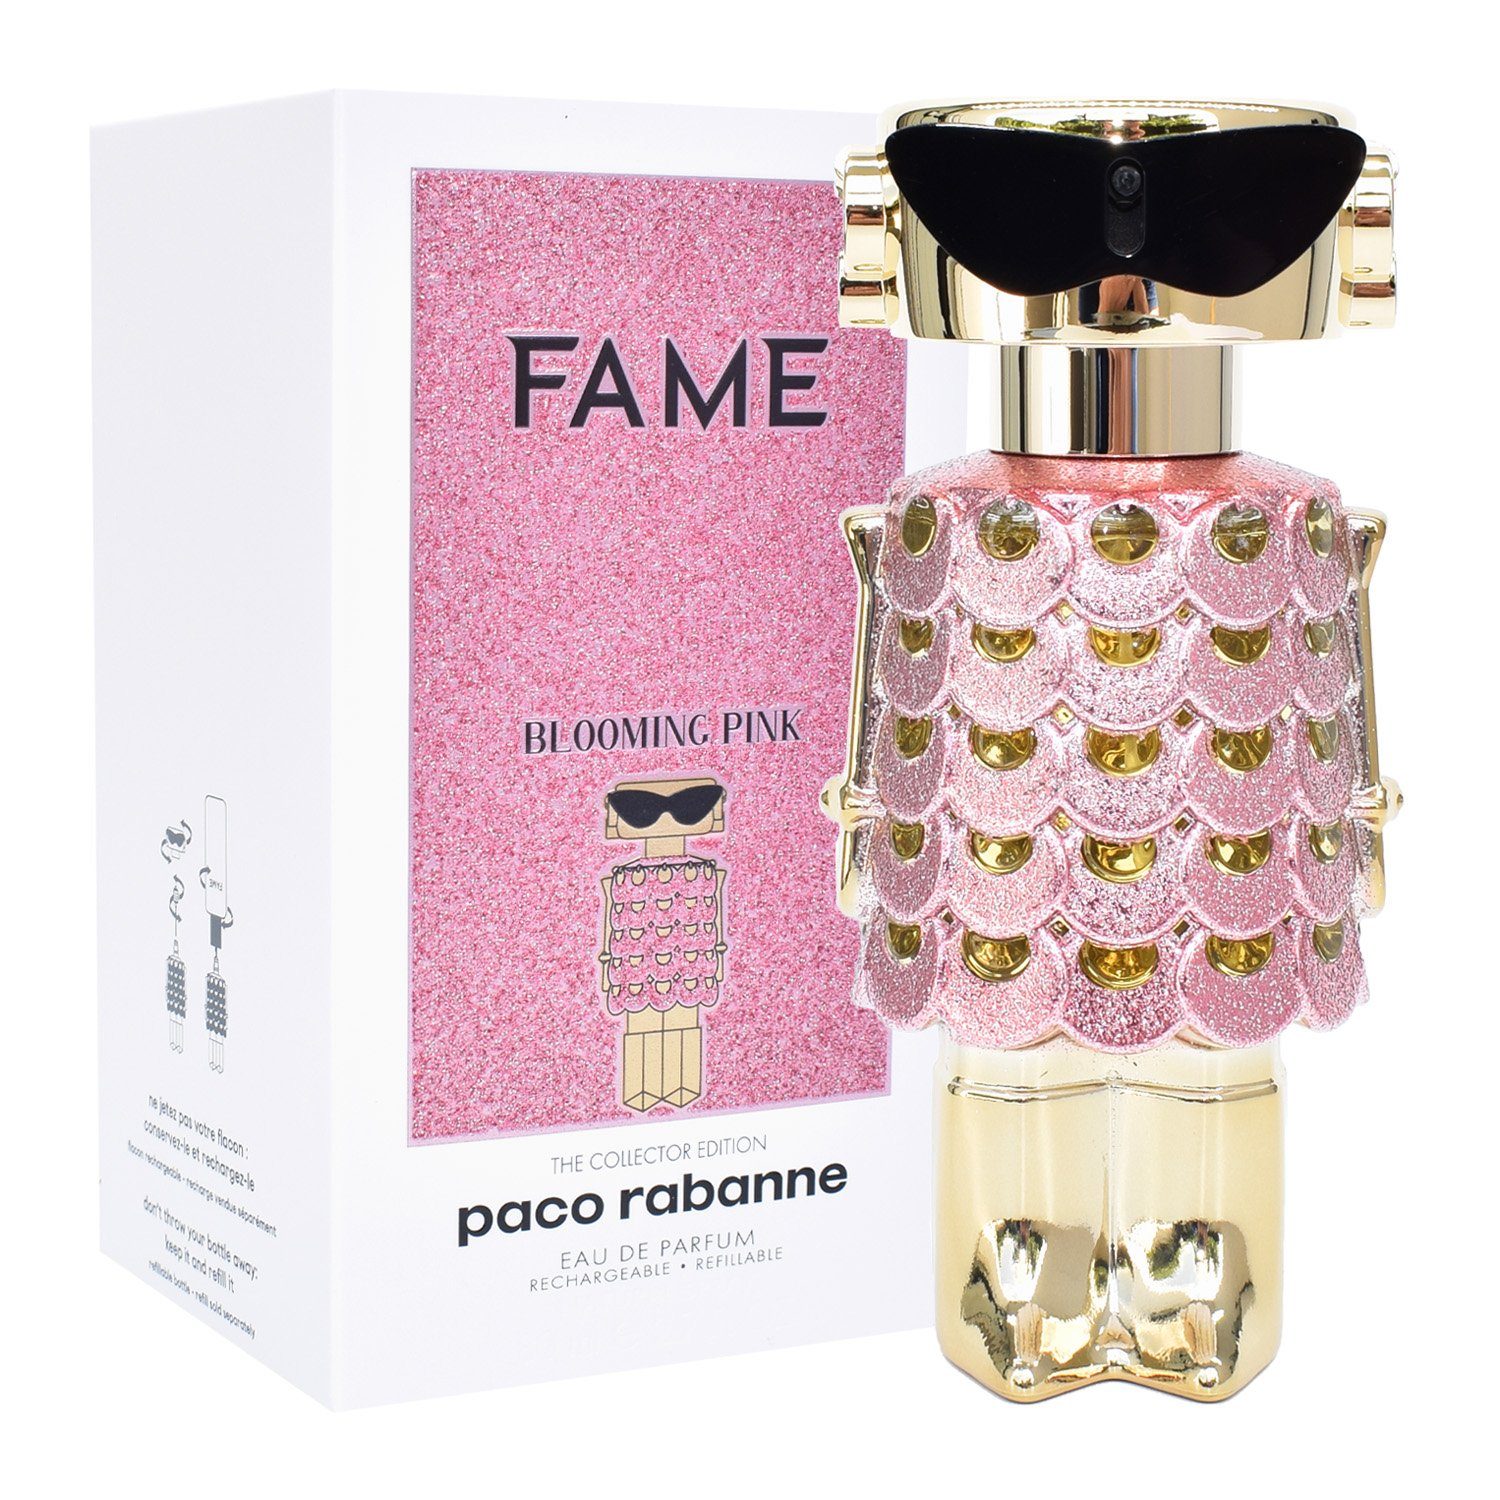 paco rabanne Eau de Parfum Fame Blooming Pink | Eau de Parfum